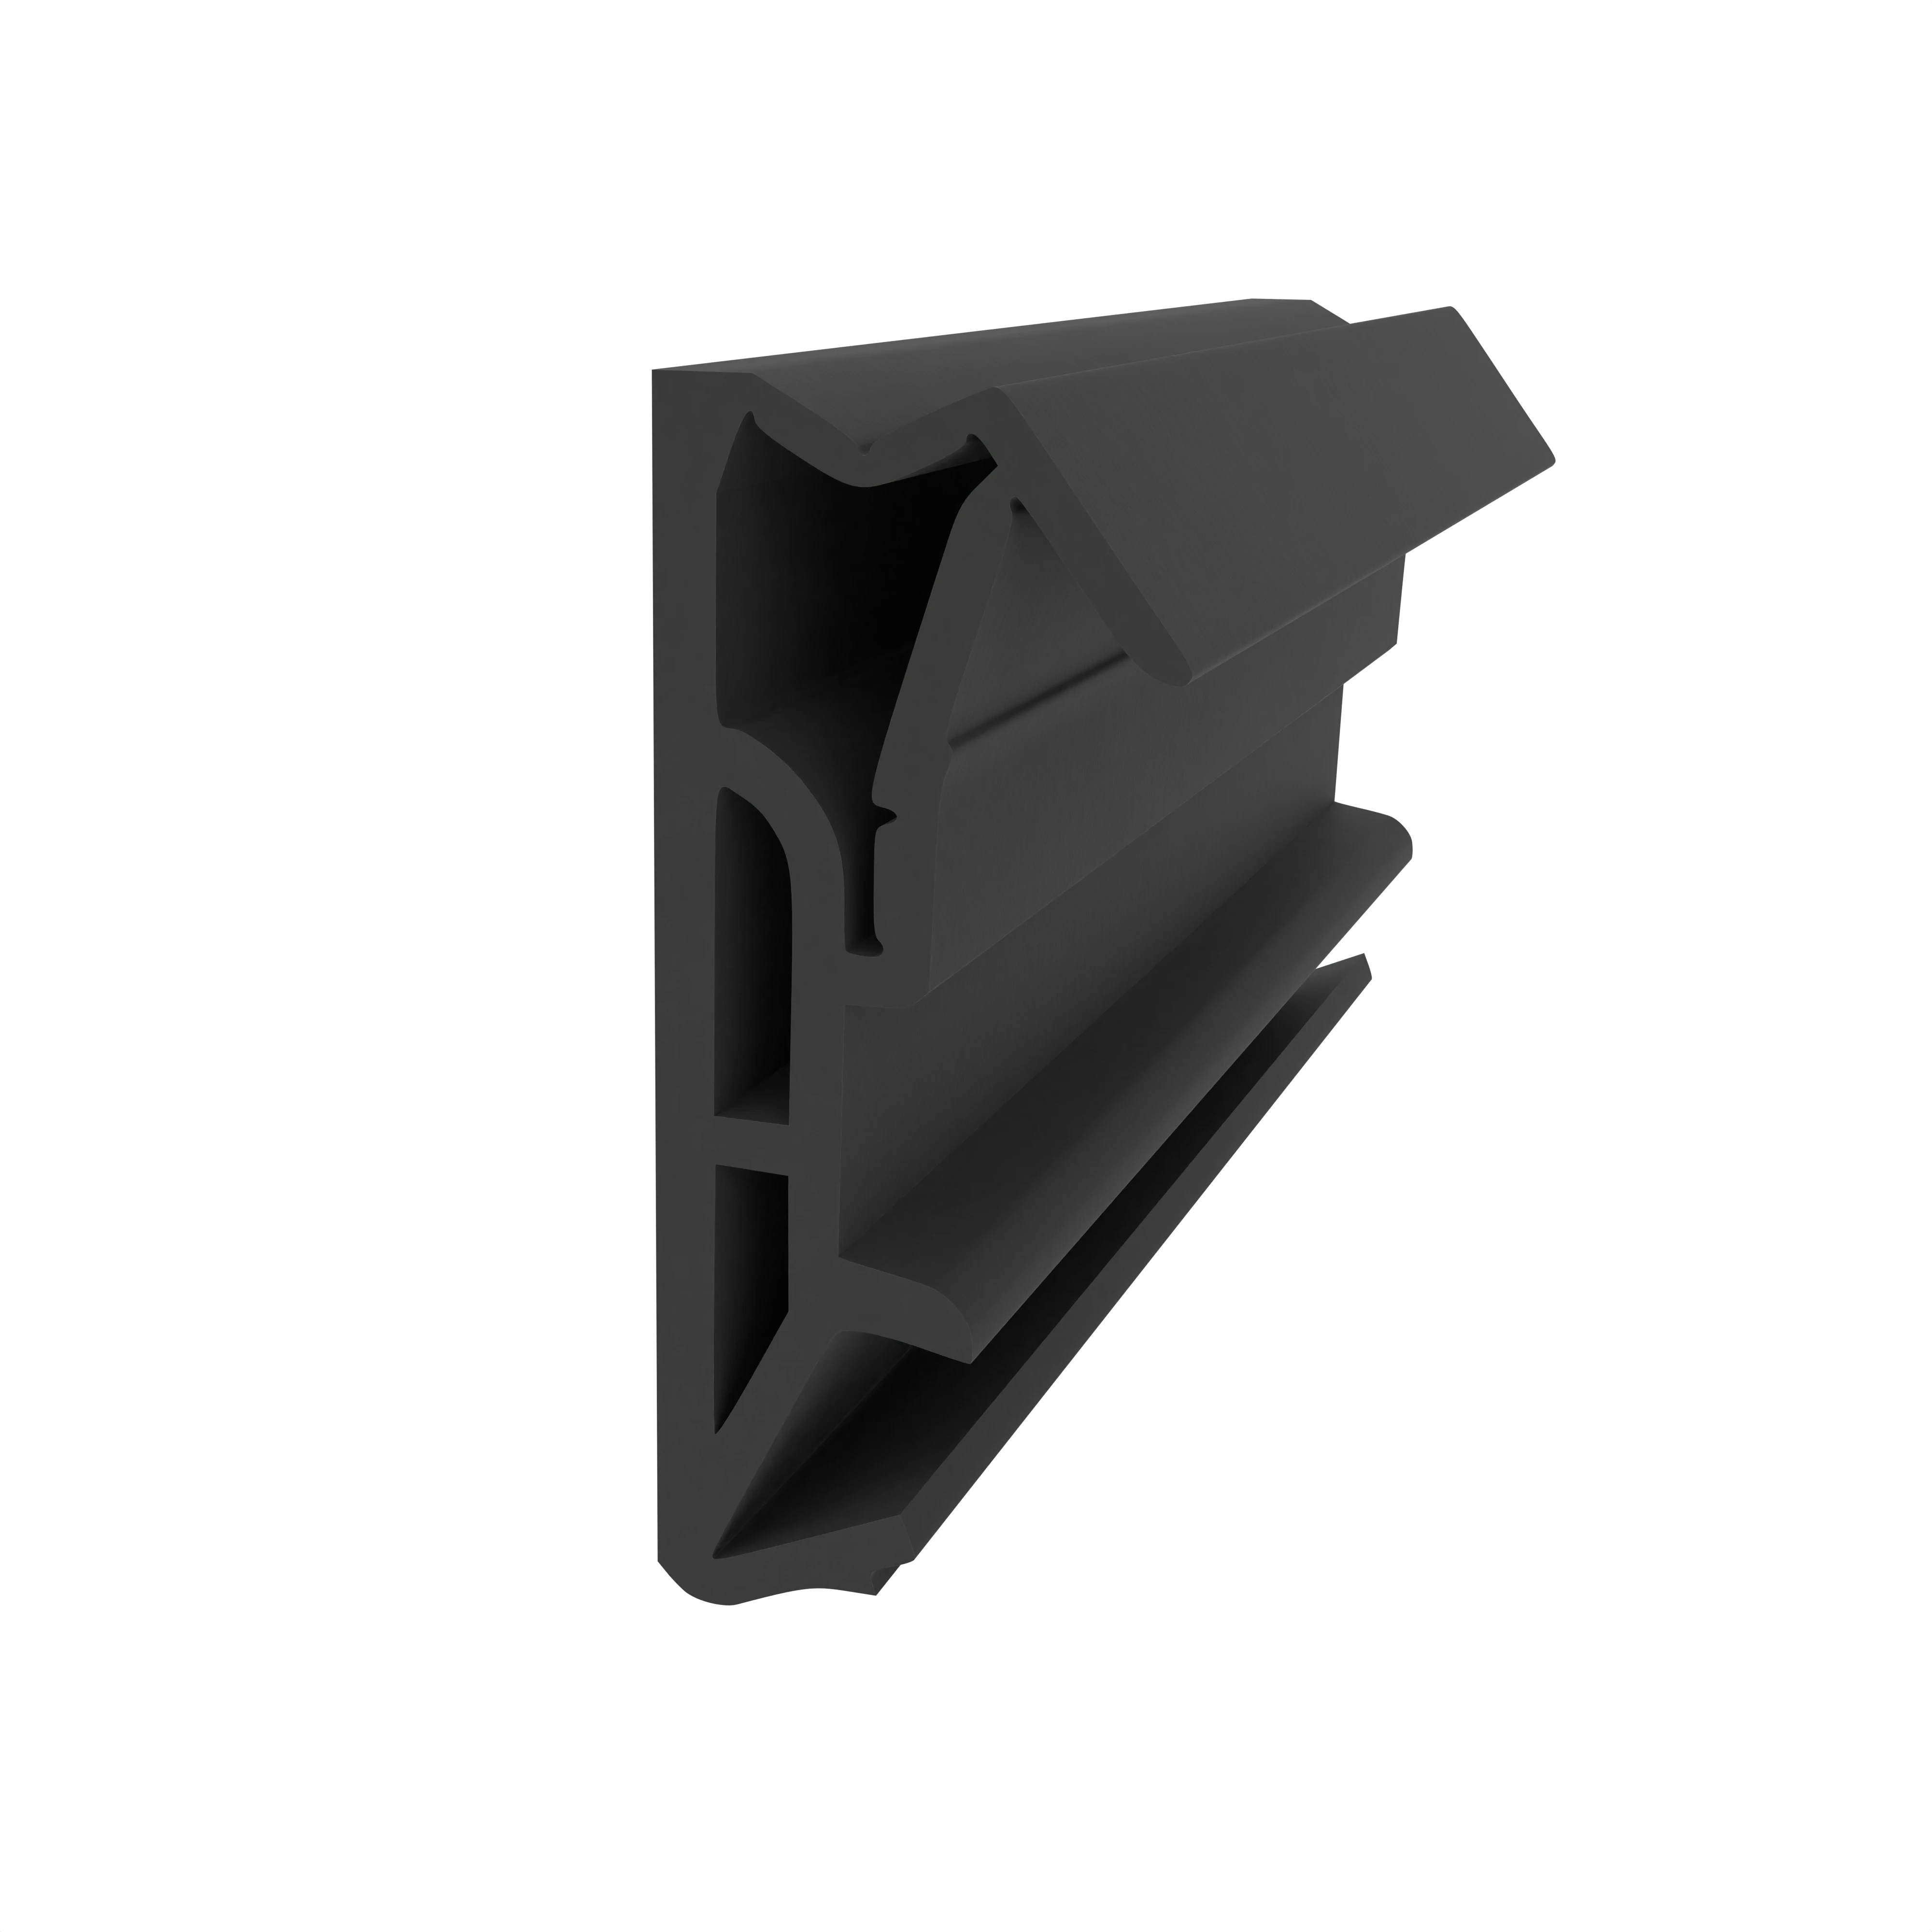 Flügelfalzdichtung für Türen | 18 mm Falzhöhe | Farbe: schwarz